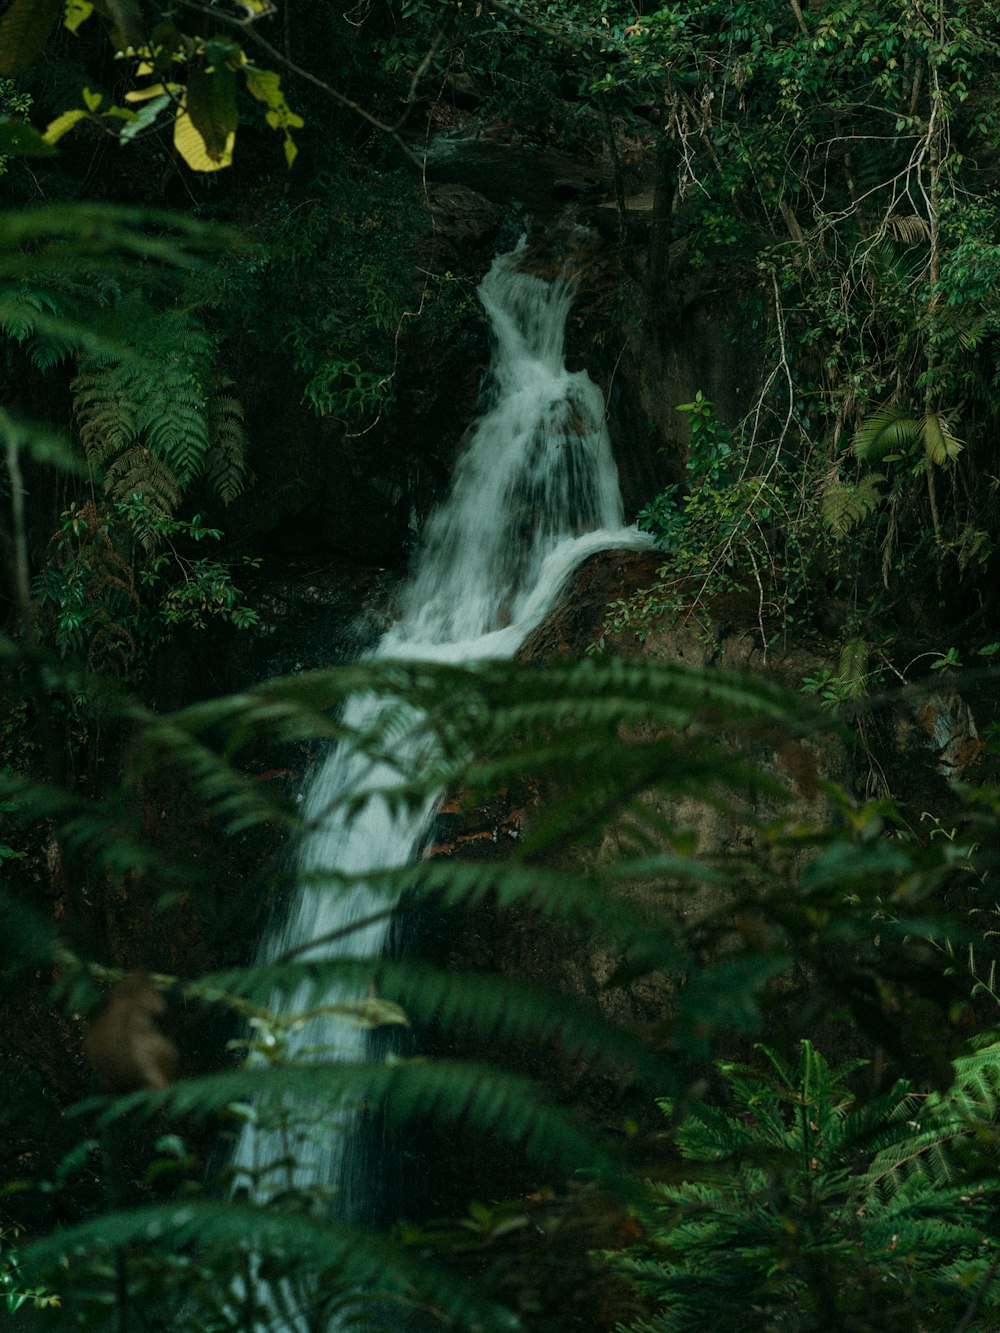 Una cascata nel mezzo di una giungla